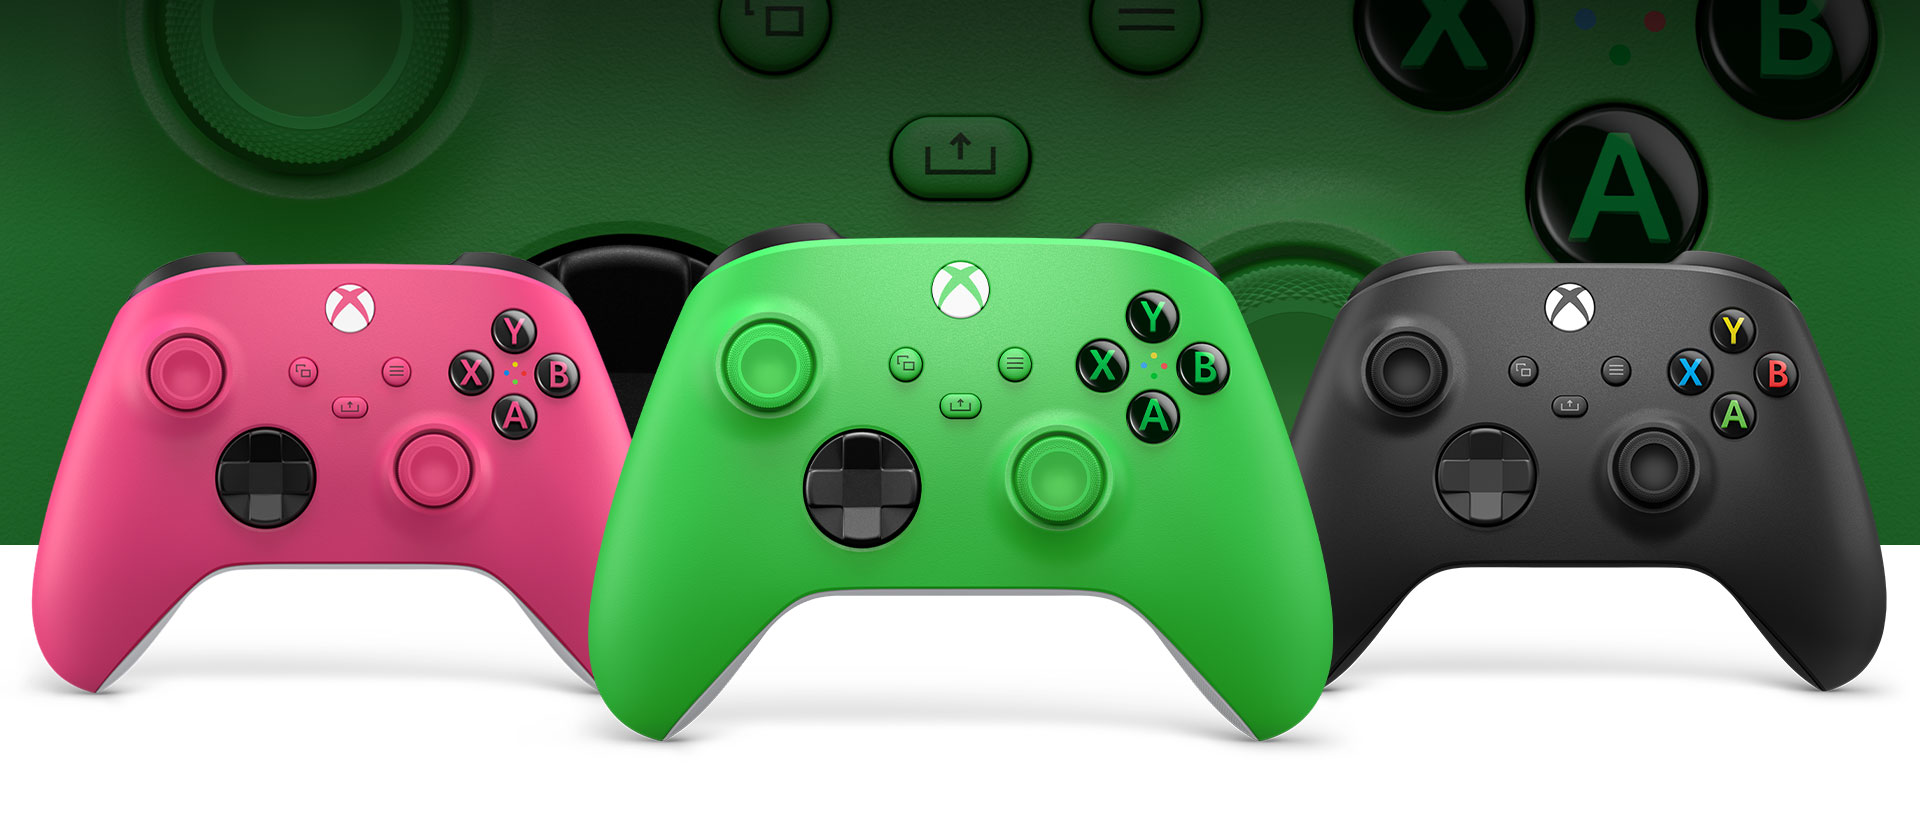 正面是 Xbox 绿色控制器，左边是粉红色，右边是磨砂黑